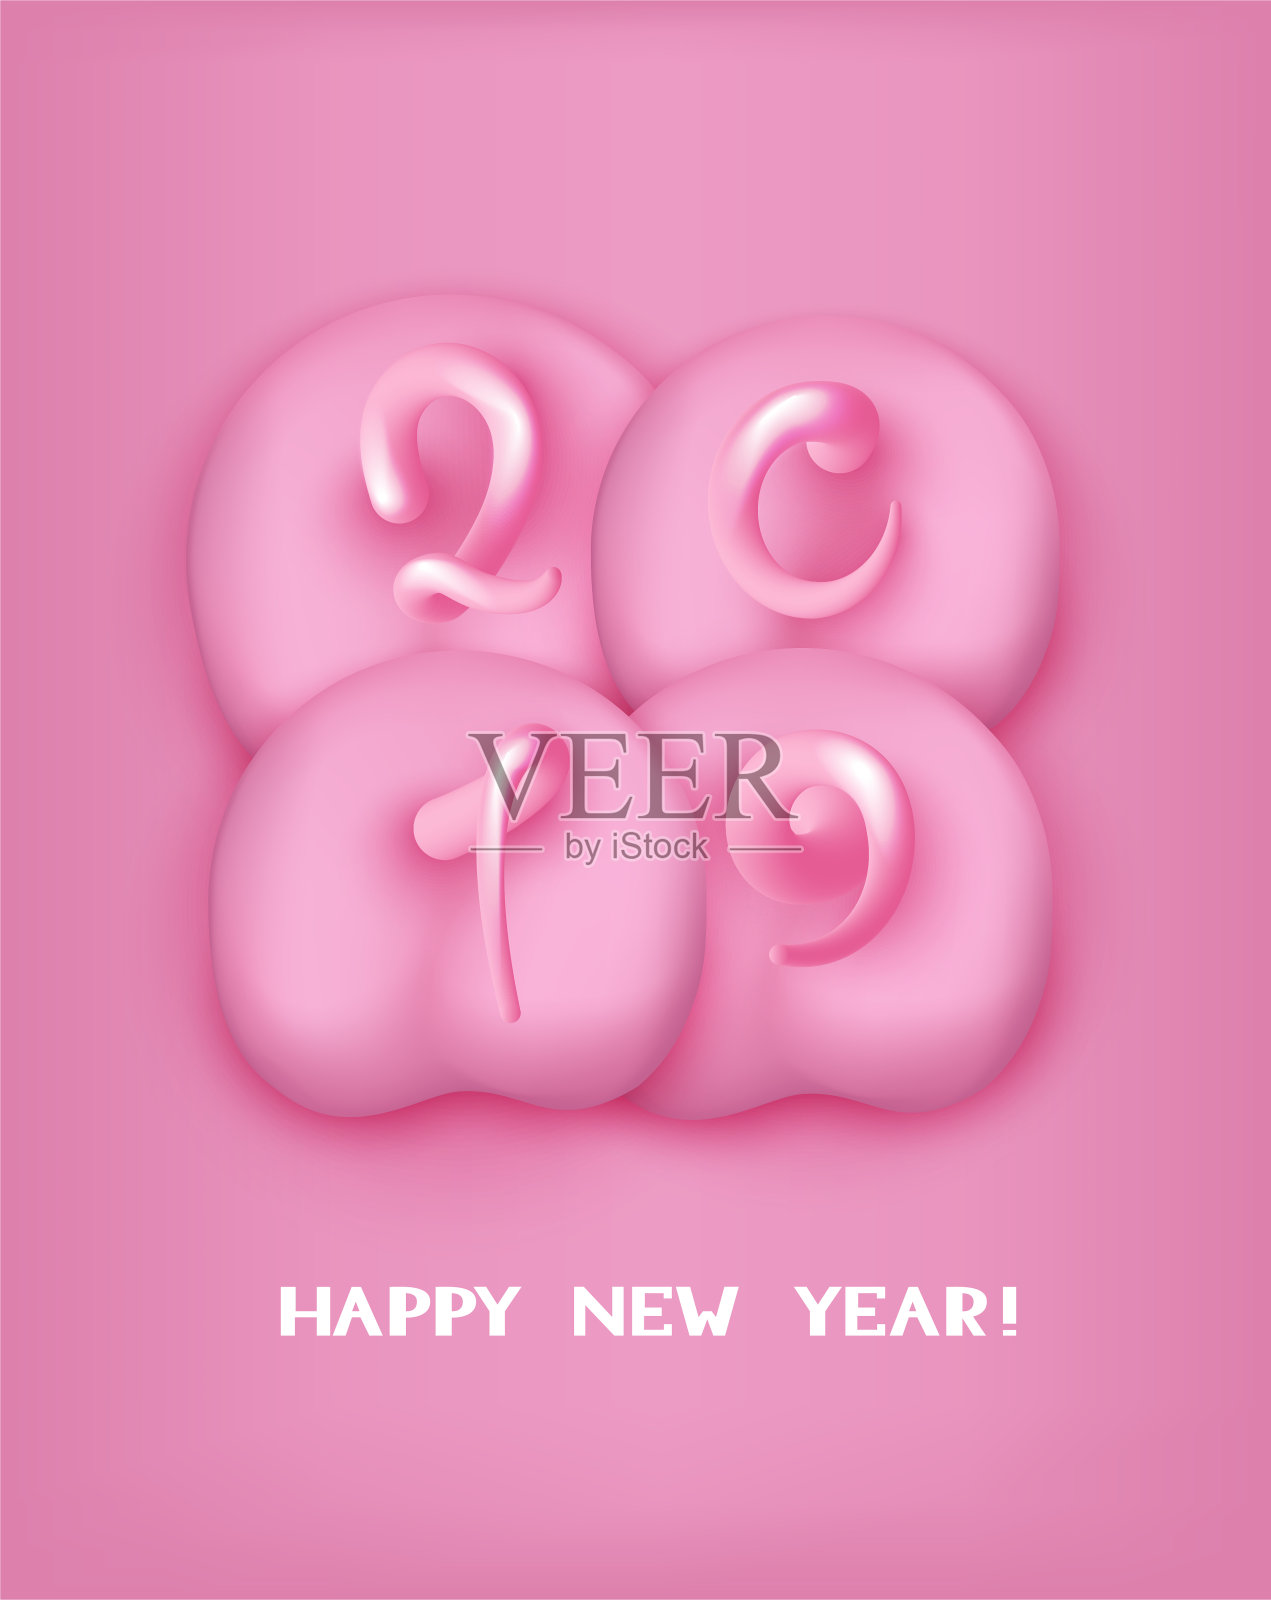 2019年的新年横幅有4个猪粉色的背面和数字形状的尾巴。矢量图设计模板素材